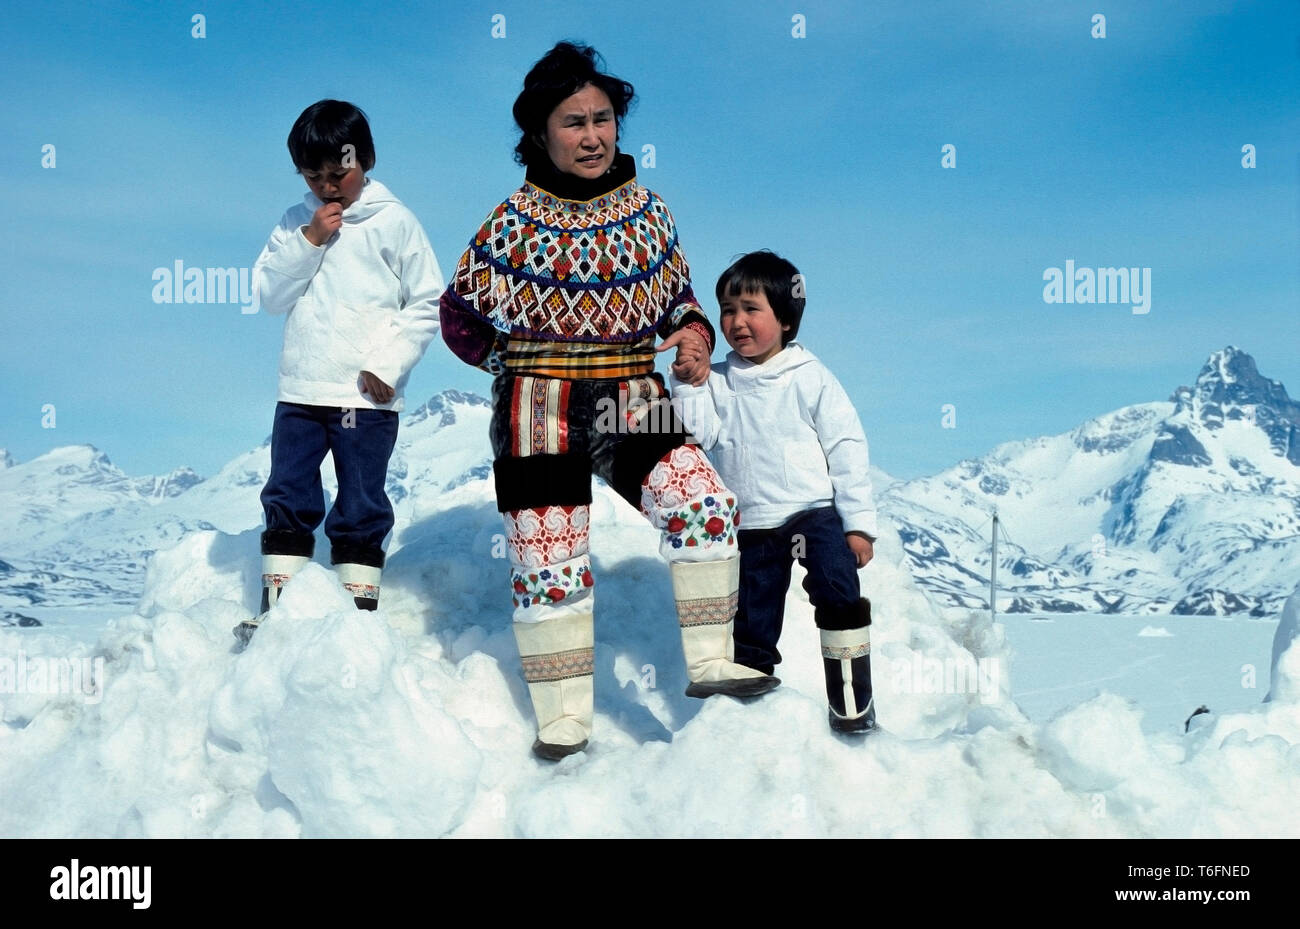 Famille Inuit, mère et fils de porter le costume national, portent tous des bottes en peau de phoque, Quernalursavik, dans l'Est du Groenland, Greenland Banque D'Images